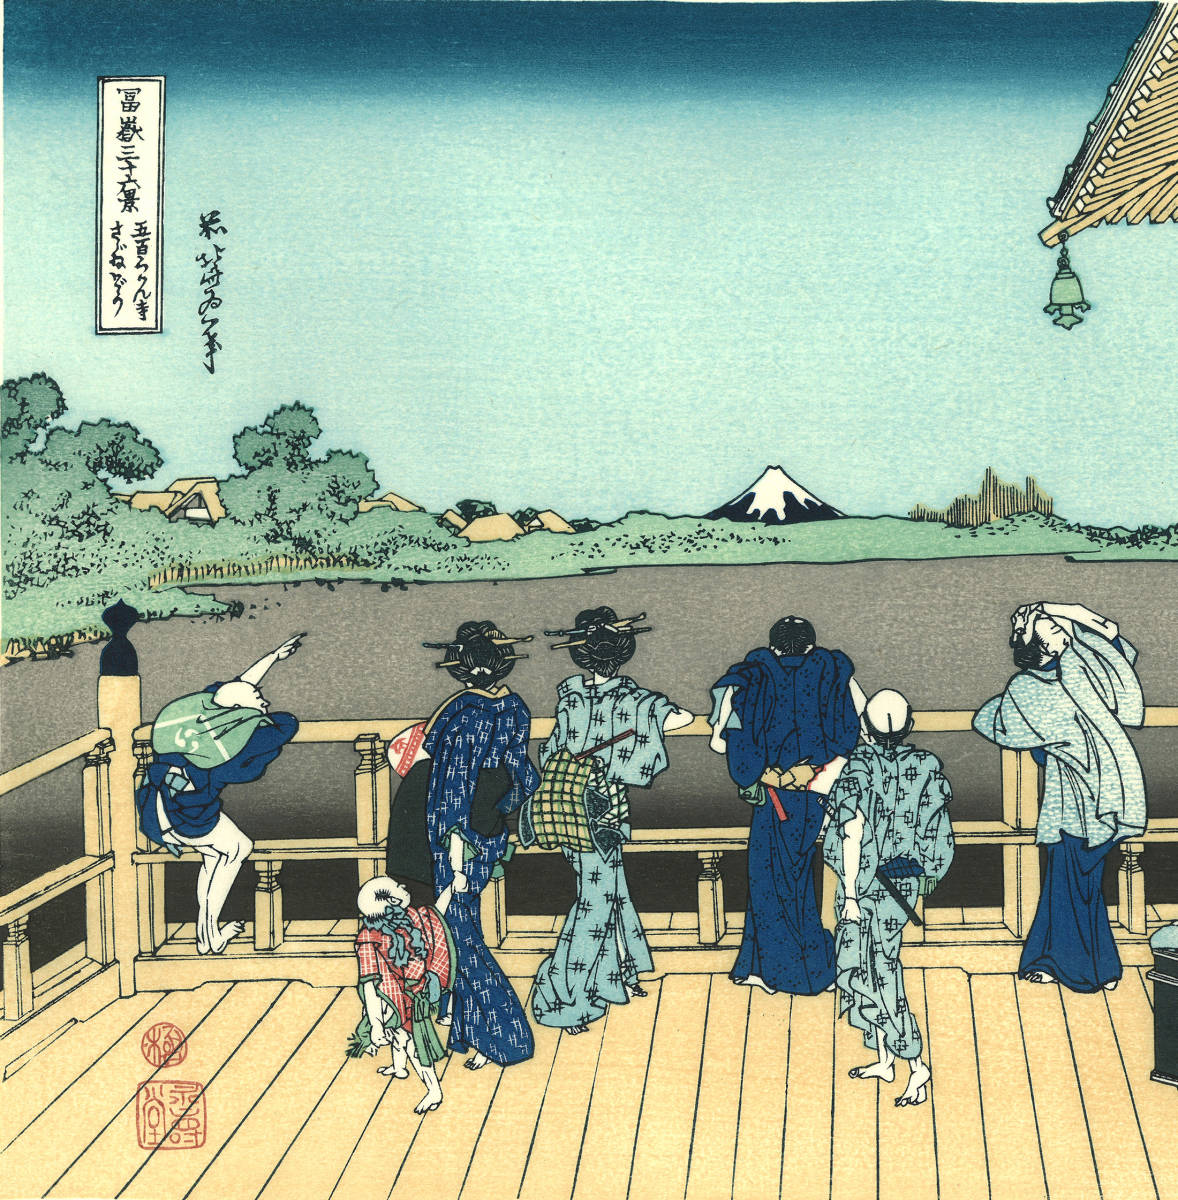 葛飾北斎 (Katsushika Hokusai) 木版画 富嶽三十六景 　五百らかん寺さゞゐ堂　 初版1831-33年（天保2-4年)頃  やはり北斎の木版画は凄い!!